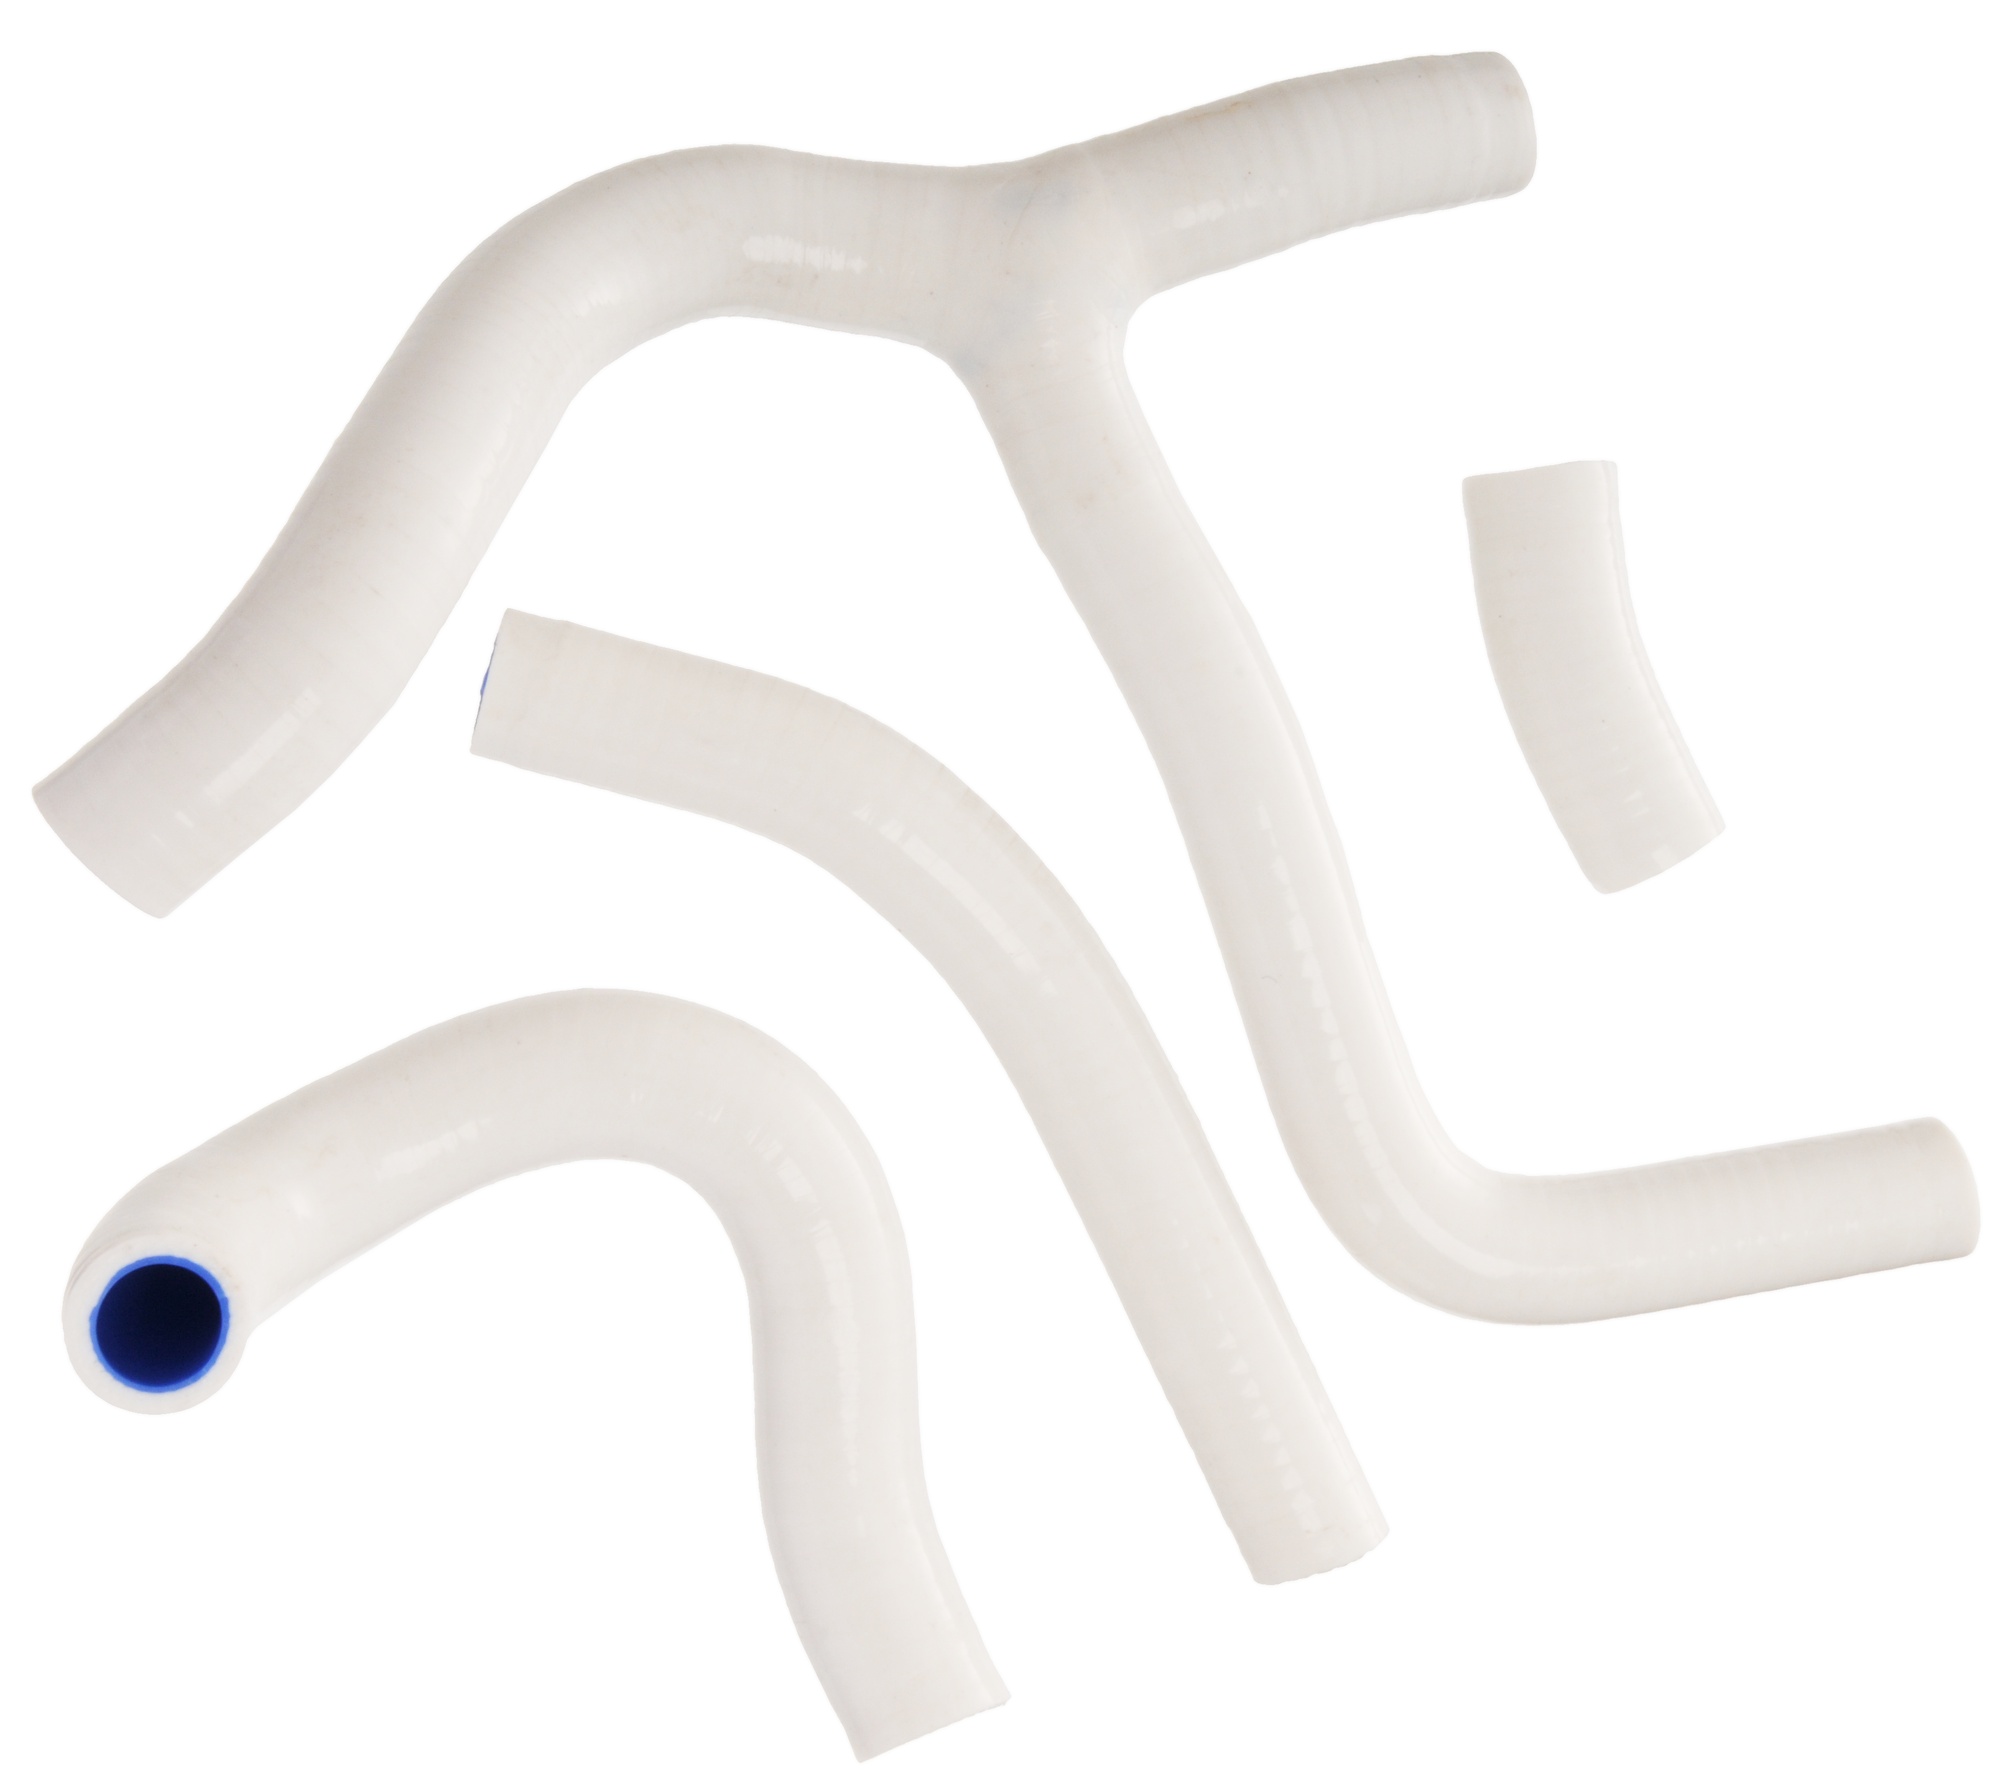 Obrázek produktu sada silikonových hadic vodního chlazení, bílá 4ks WM058 white